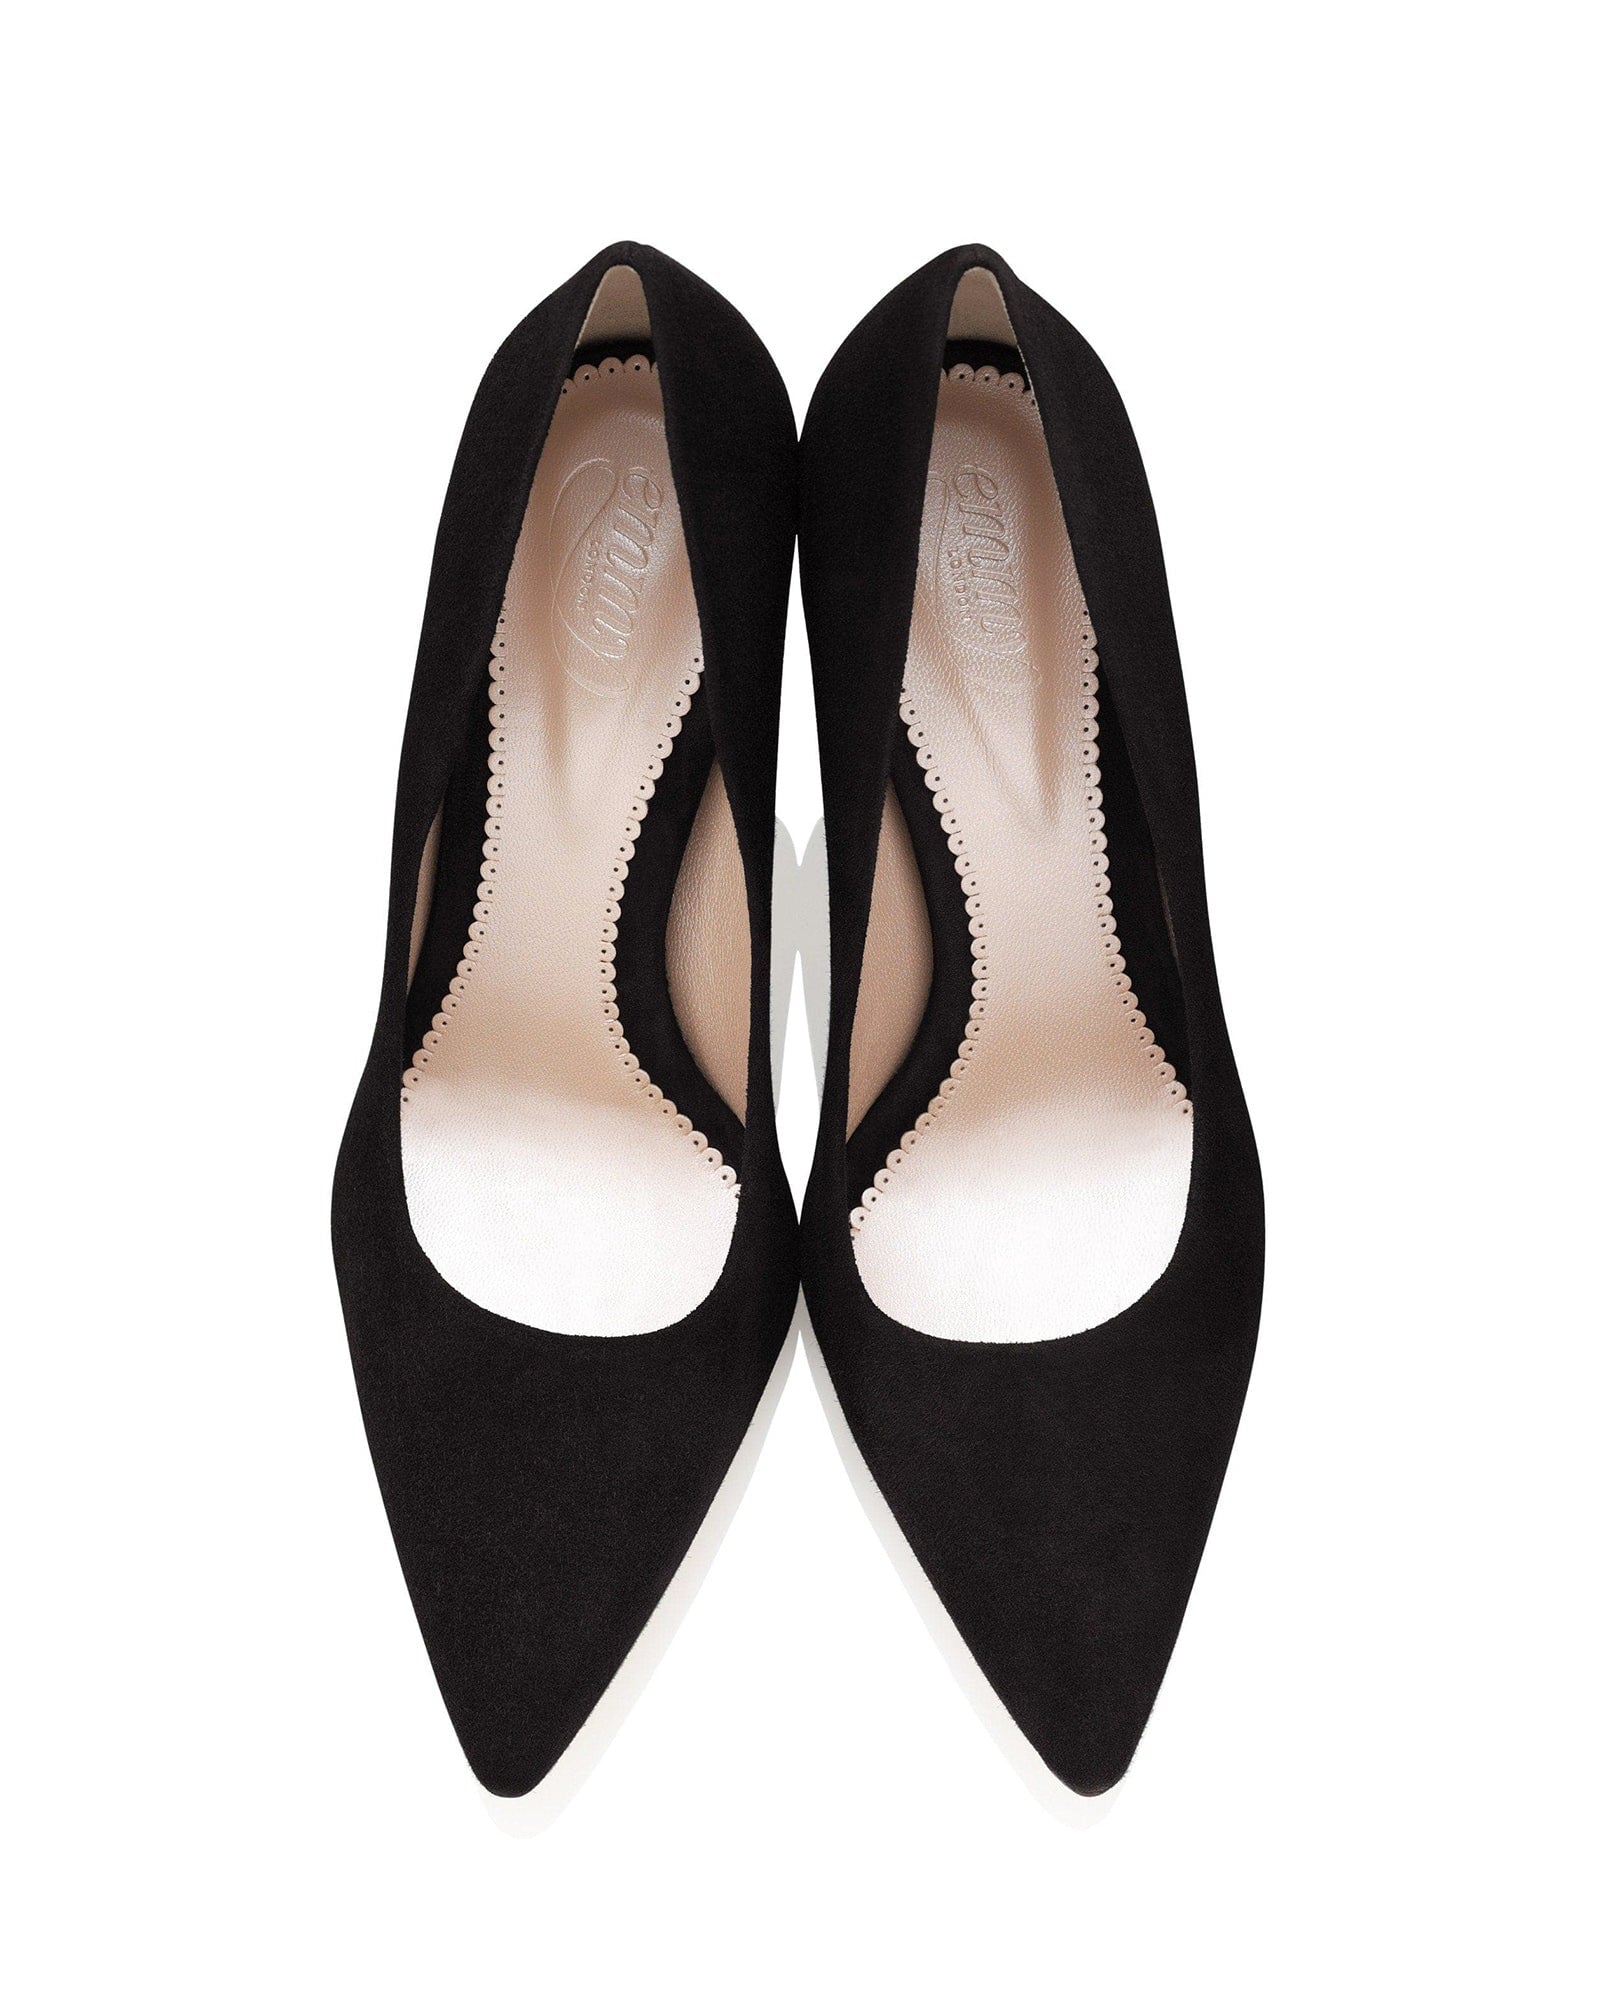 Josie Jet Black Fashion Shoe Black Block Heel Pointed Court Shoe  image